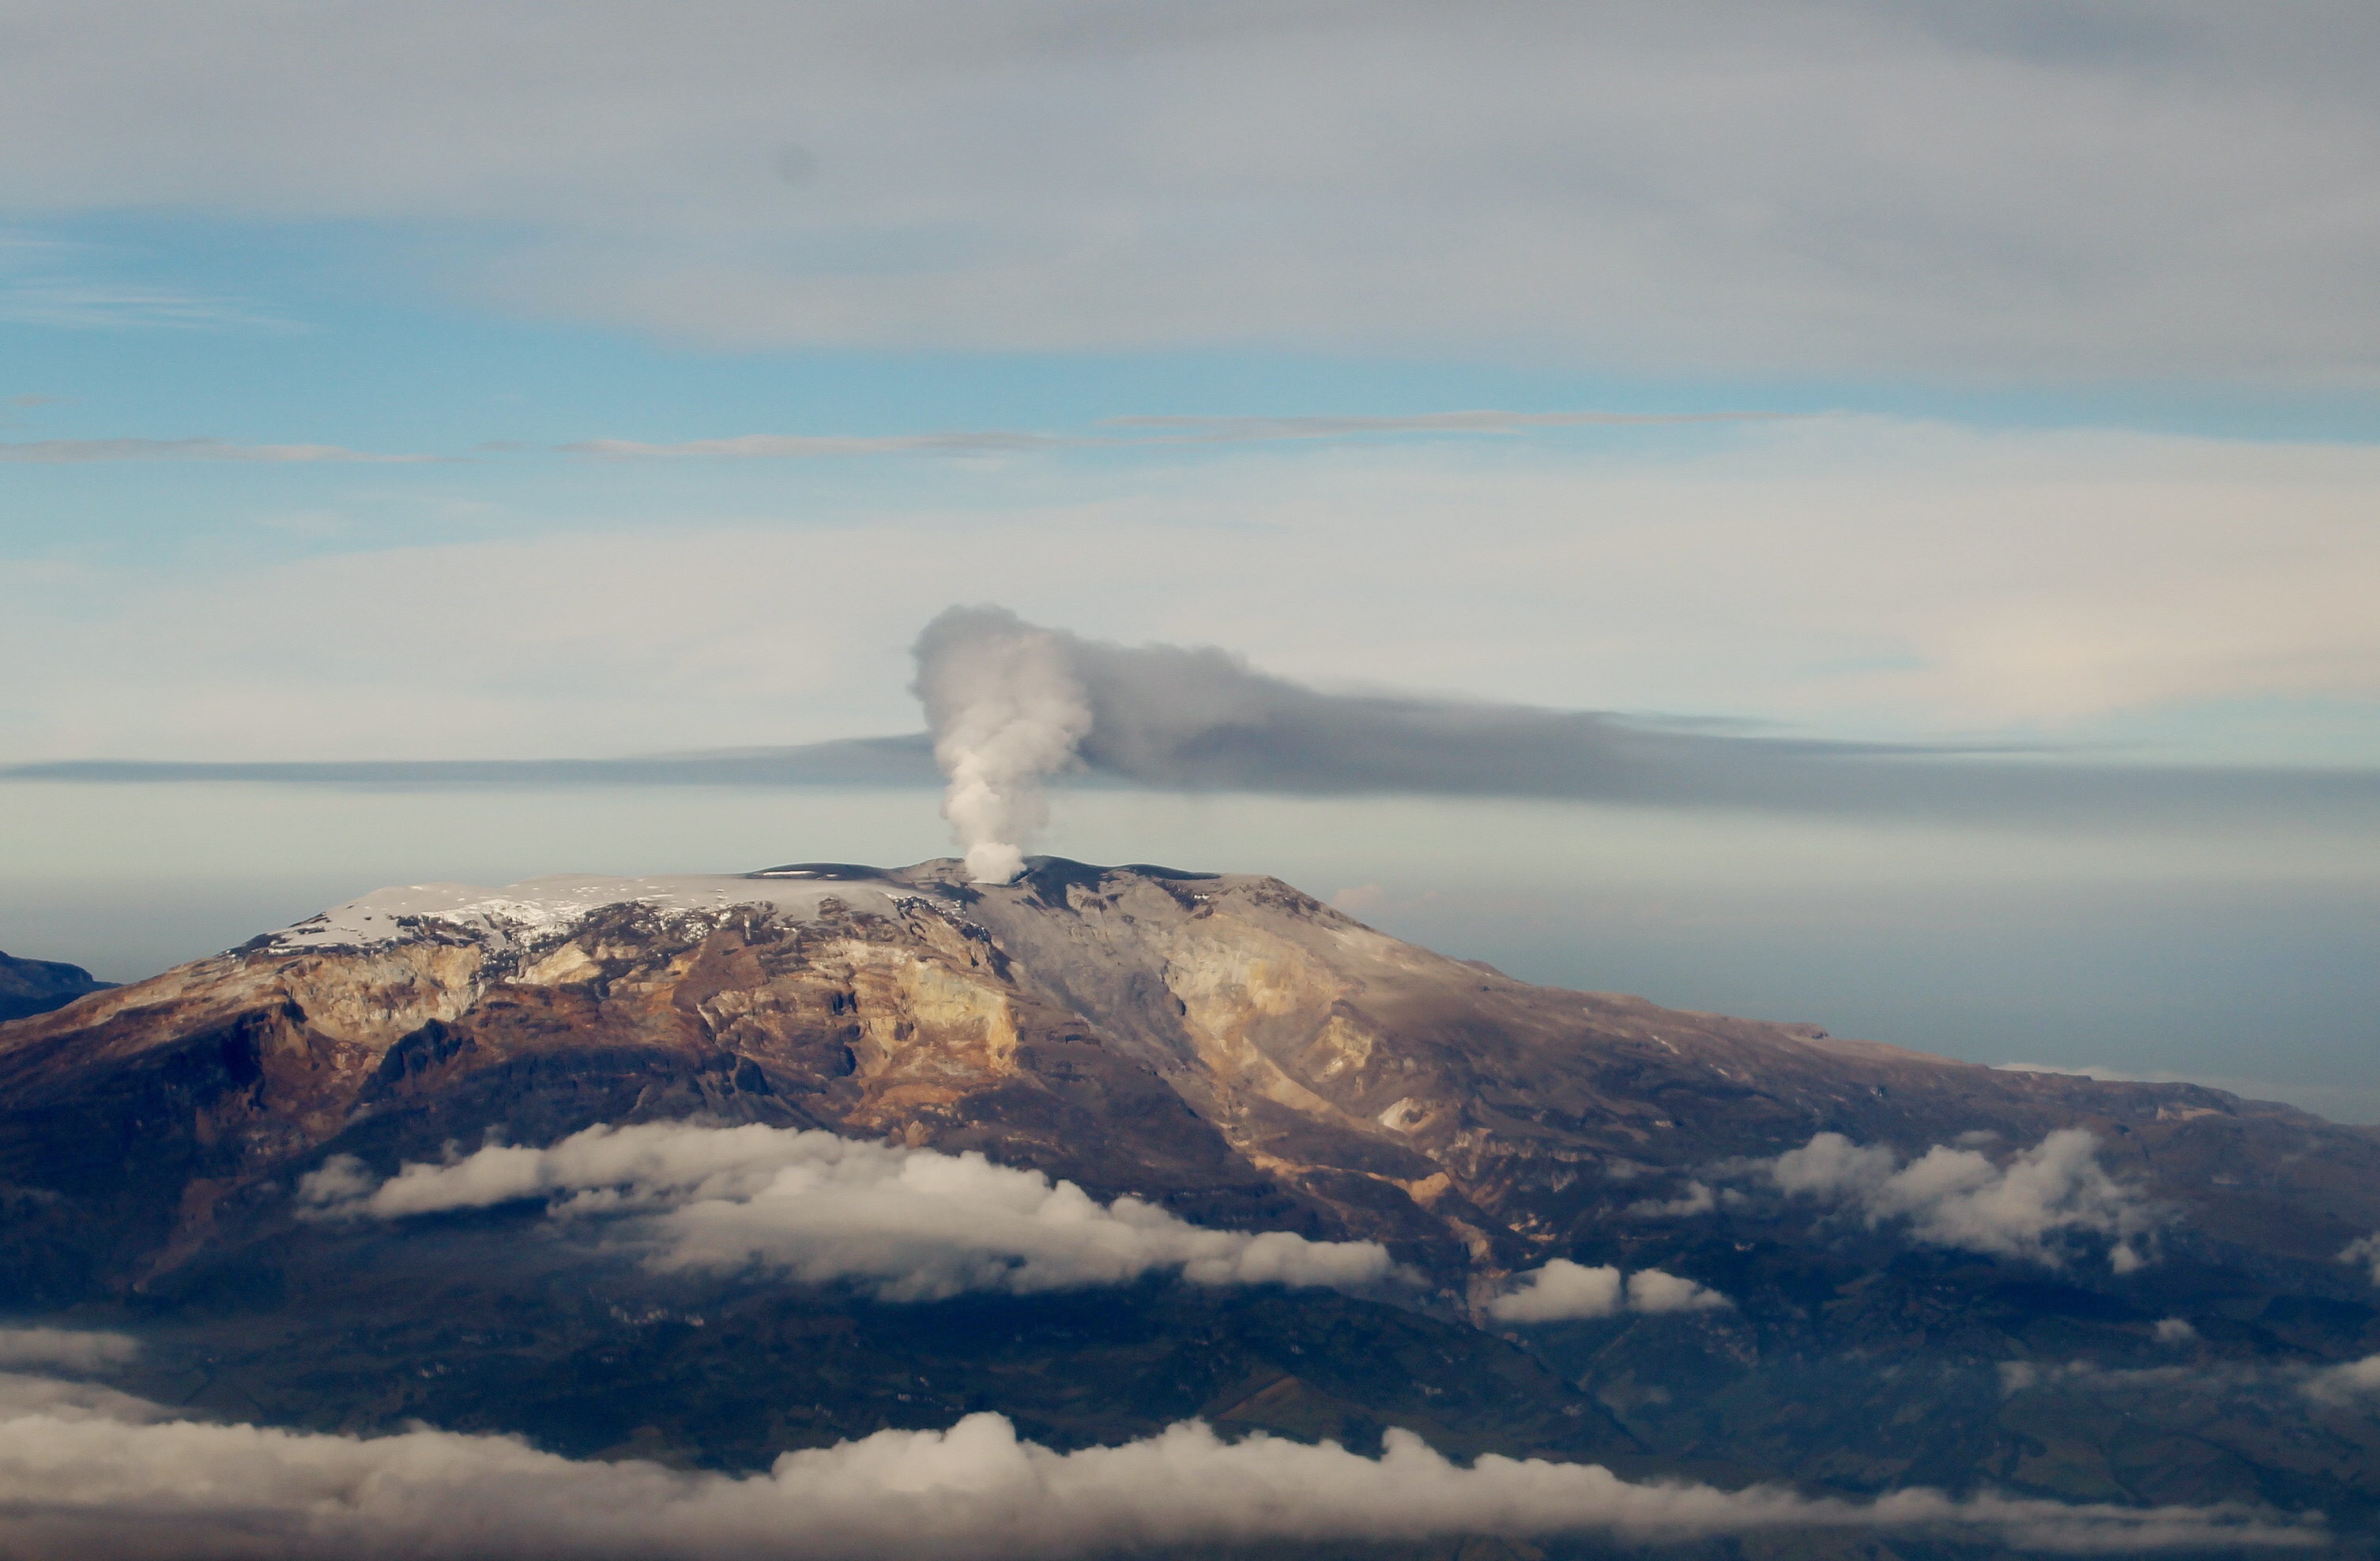 La actividad sísmica en el volcán ha aumentado considerablemente en los últimos días. El Servicio Geológico Colombiano solicitó mantener la calma. (EFE/LEONARDO MUÑOZ/Archivo)
